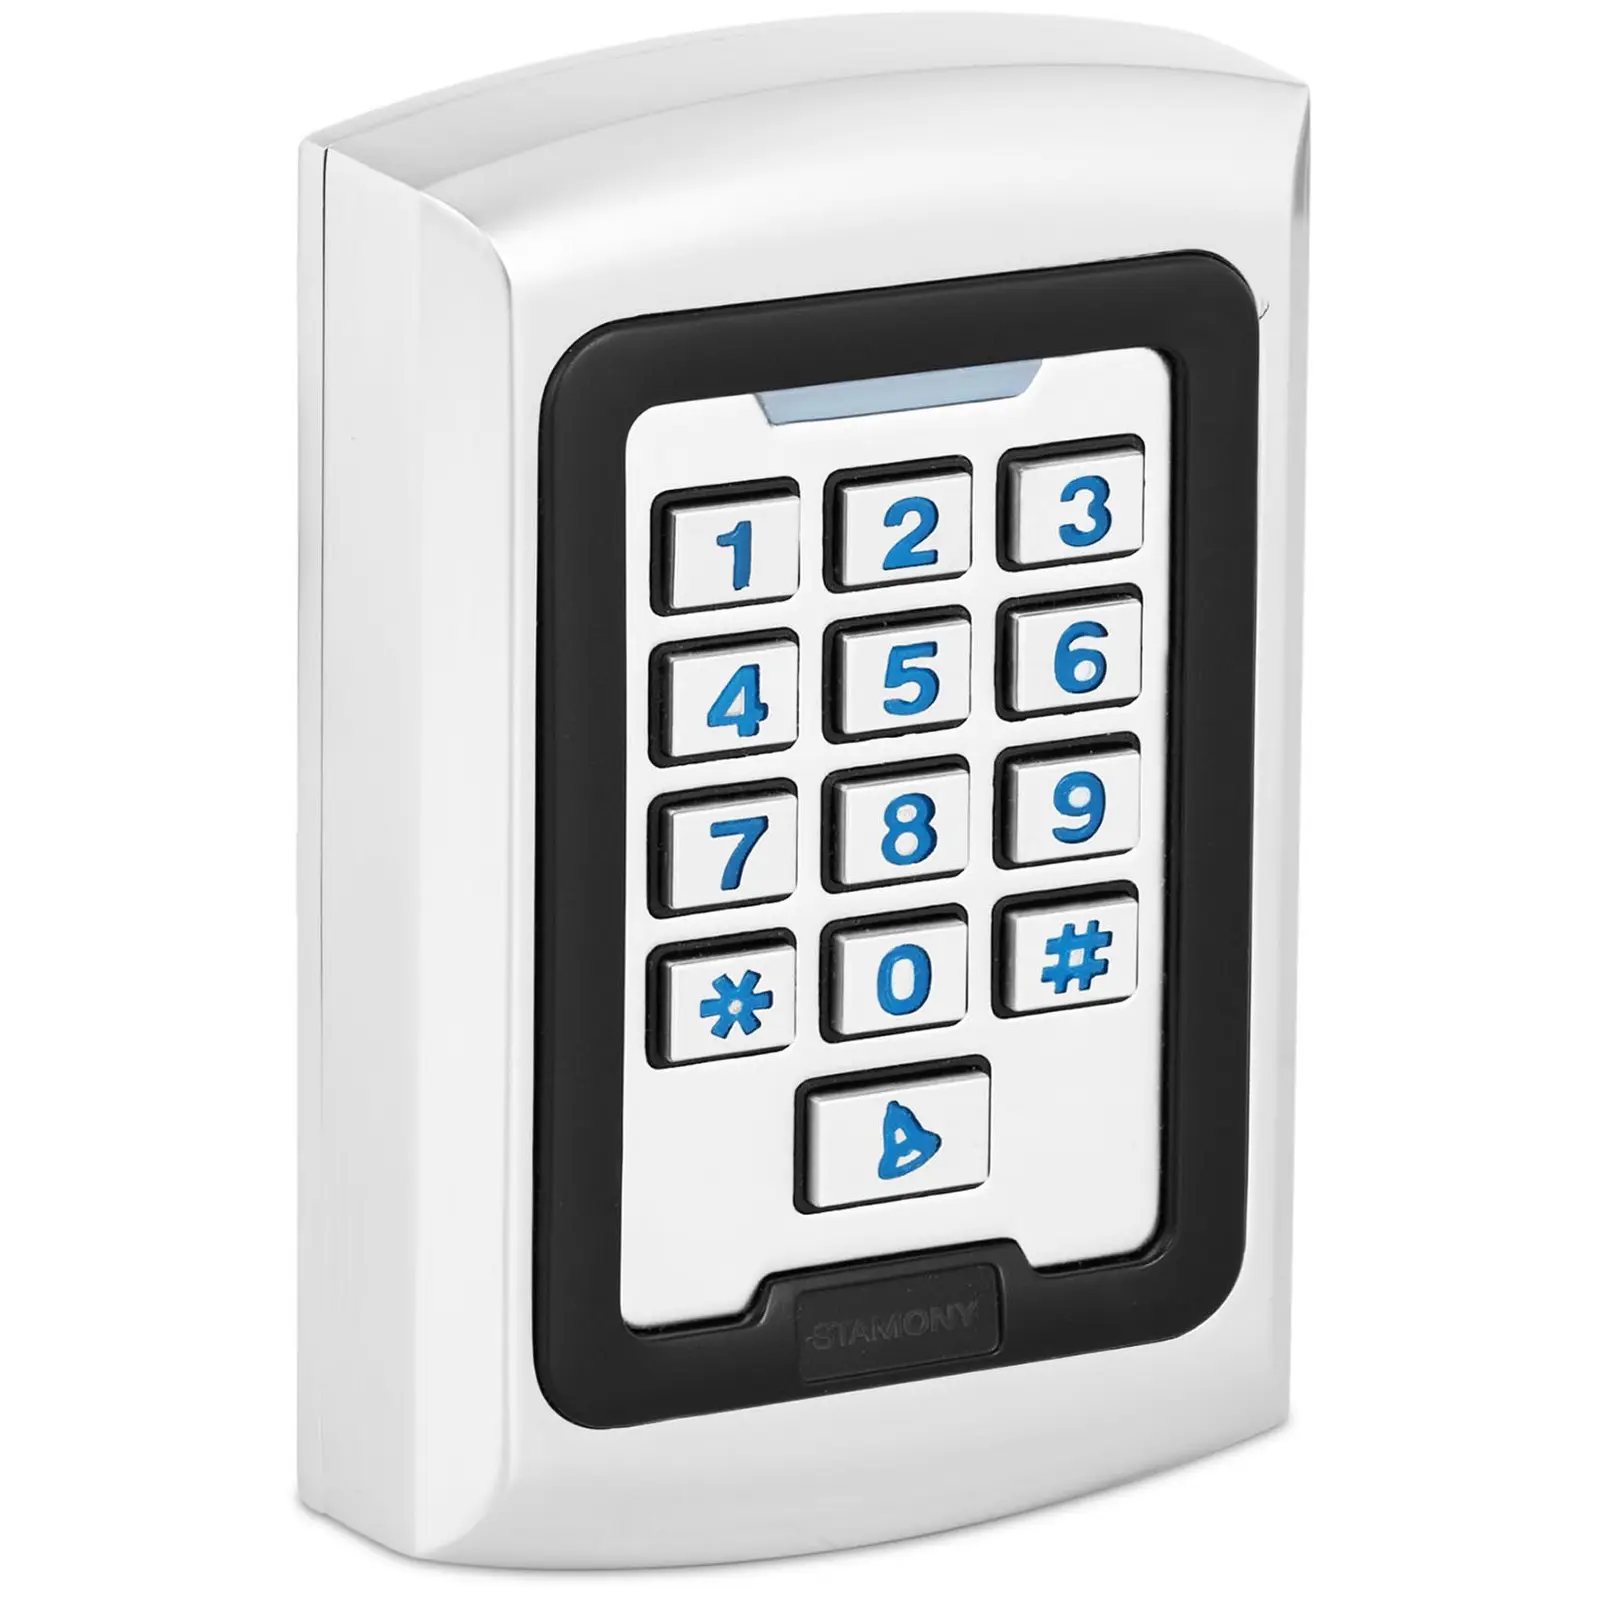 Kódový zámek ST-CS-500 PIN / karta typ karty EM 2 000 paměťových míst WG 26 vodotěsný - Skříňky na klíče Stamony